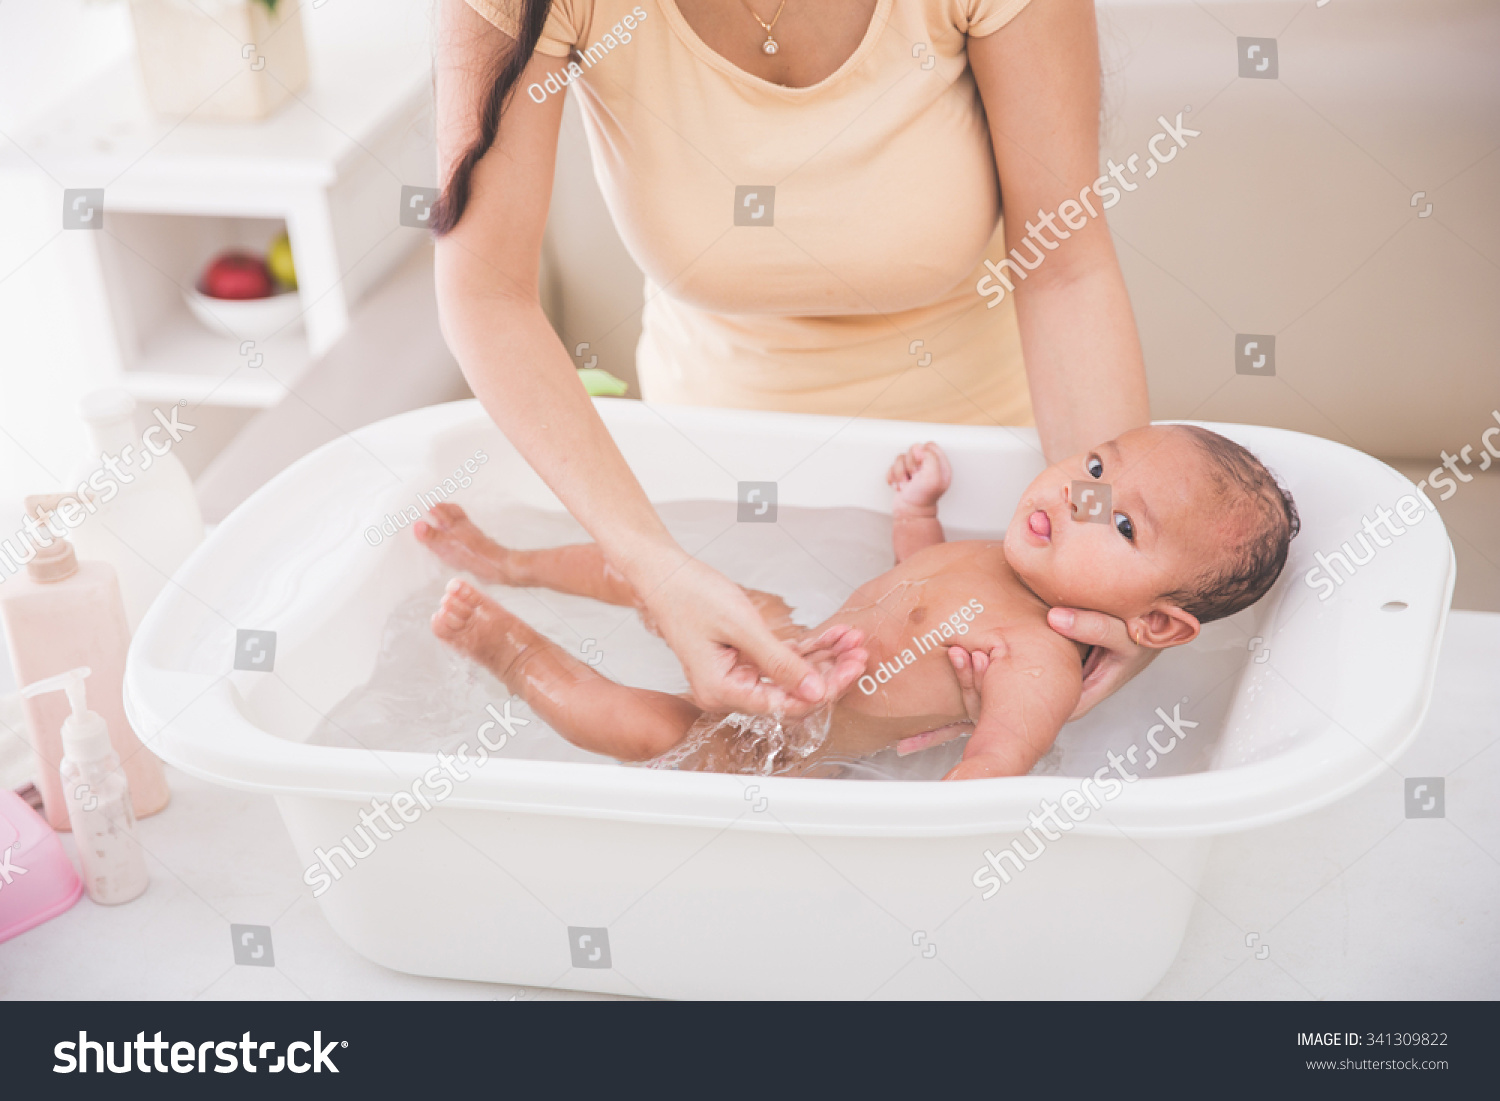 Первая гигиеническая ванна. Ванночка для новорожденных. Купание малыша. Гигиеническая ванна новорожденному ребенку. Проведение гигиенической ванны новорожденному.